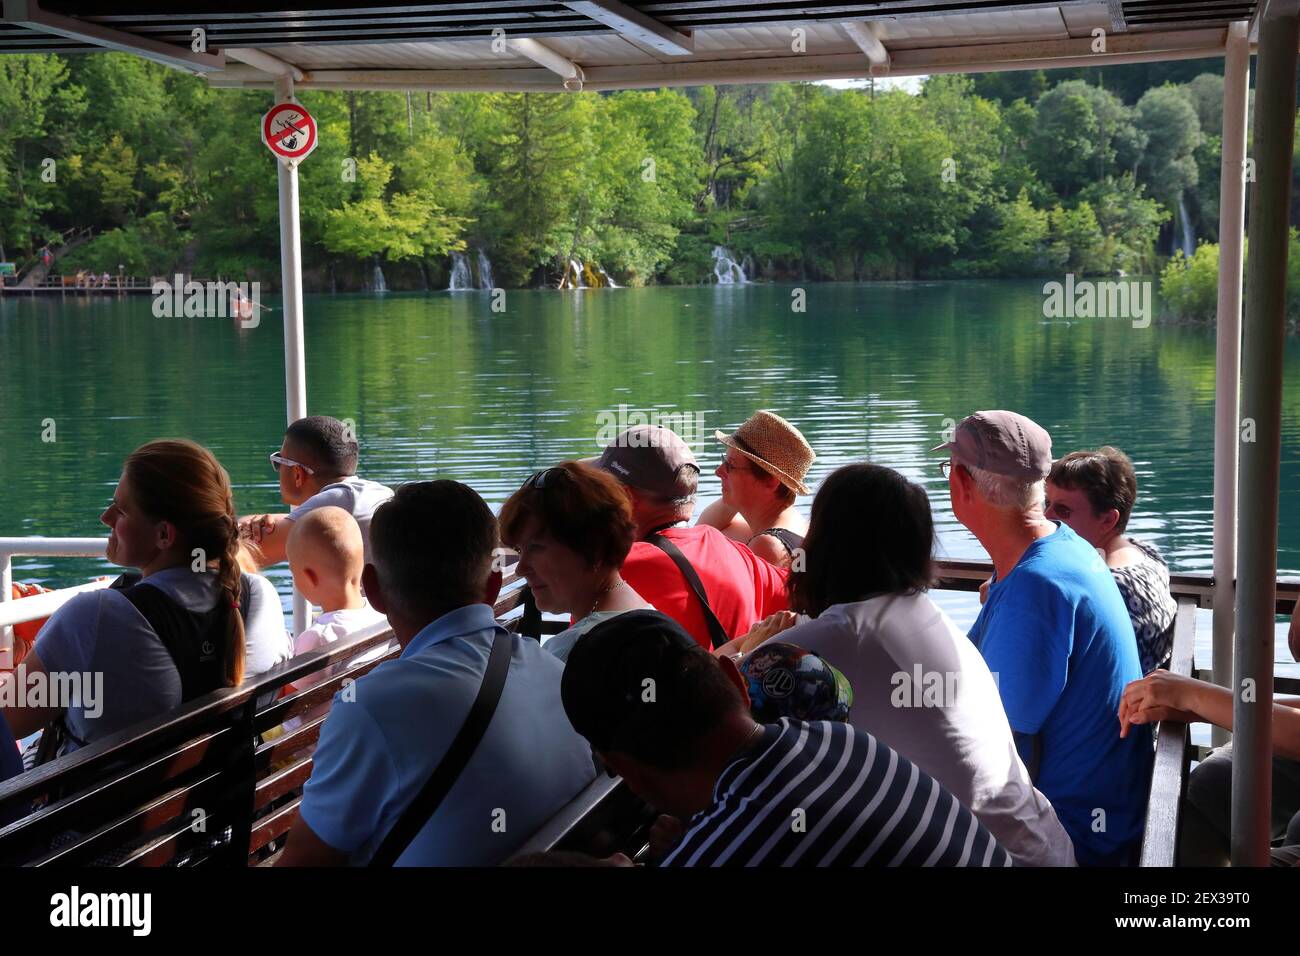 PLITVICE, CROATIE - 15 JUIN 2019 : les gens prennent part à la visite en bateau du parc national des lacs de Plitvice (Plitvicka Jezera) en Croatie. Plitvice est le plus p Banque D'Images